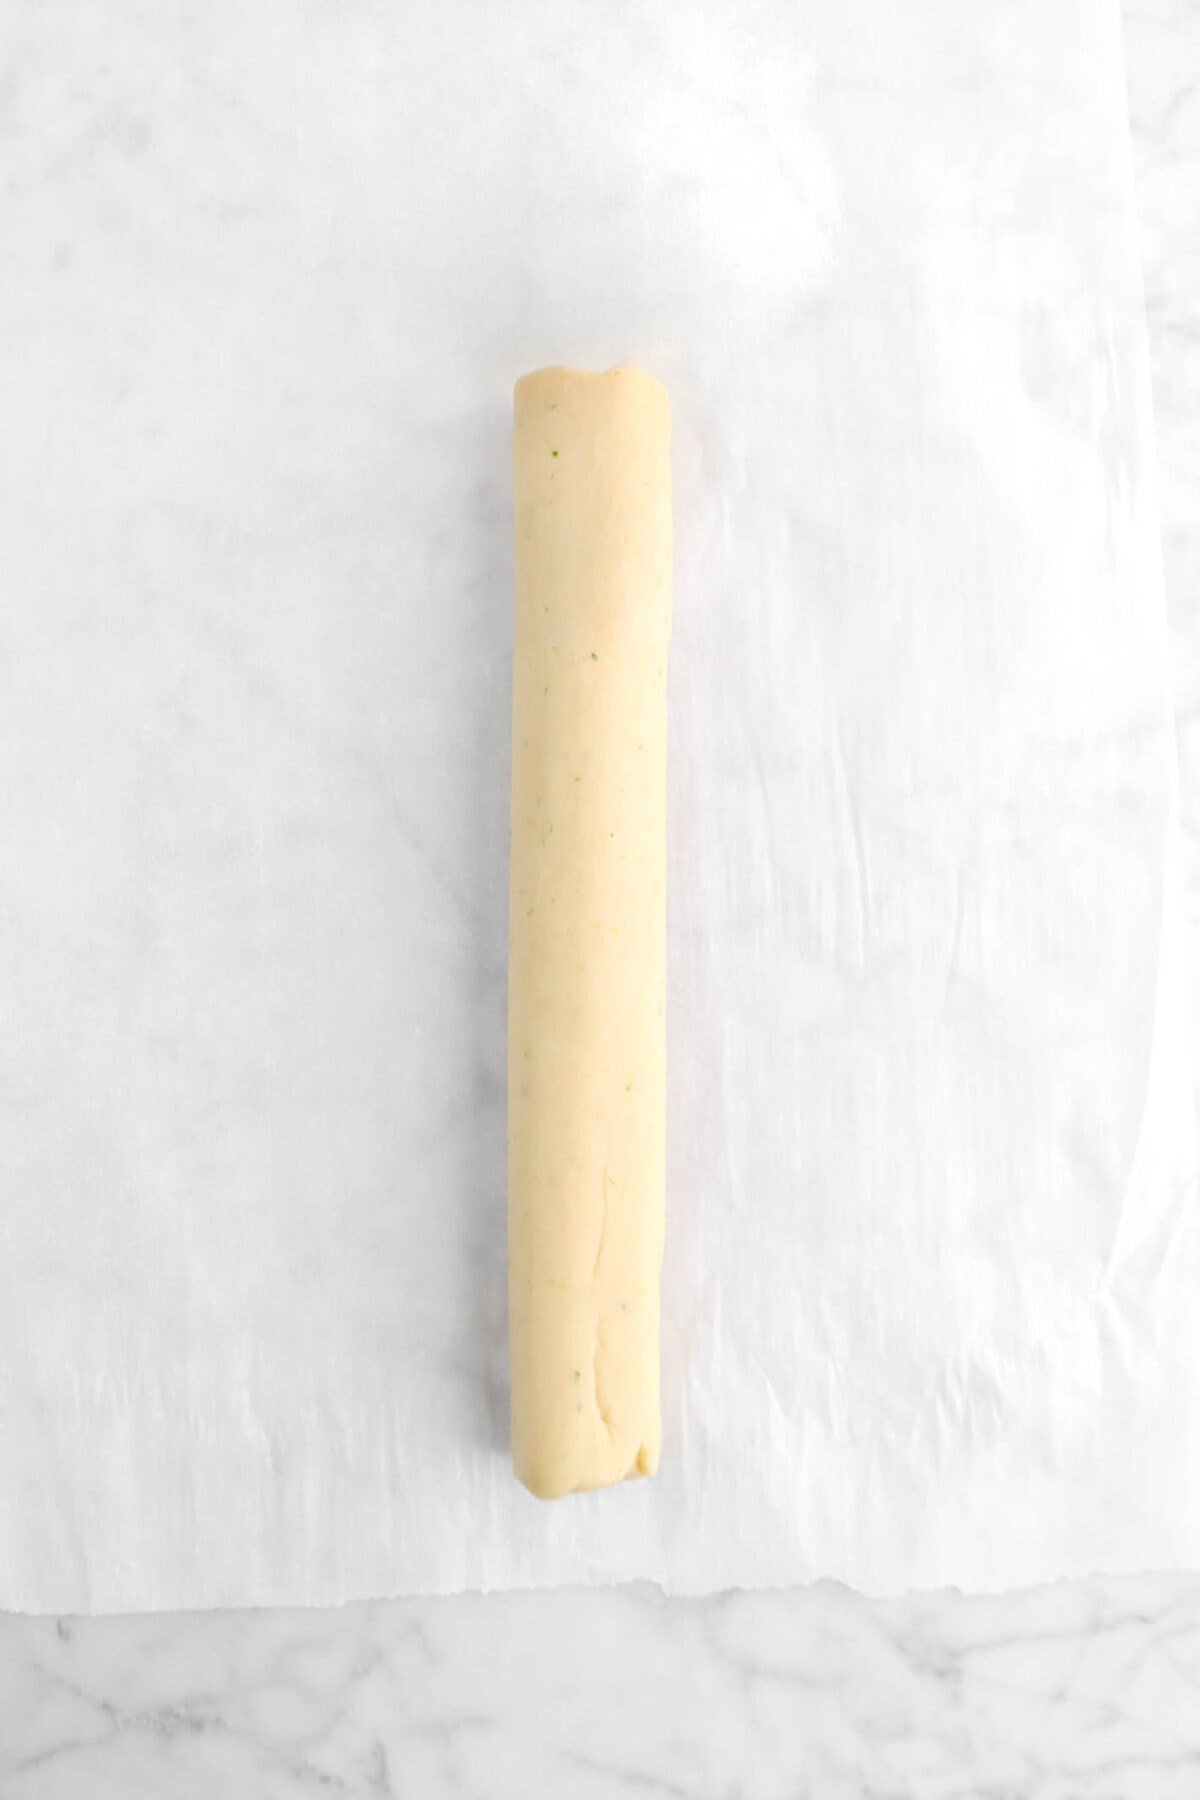 rolled shortbread dough on parchment paper